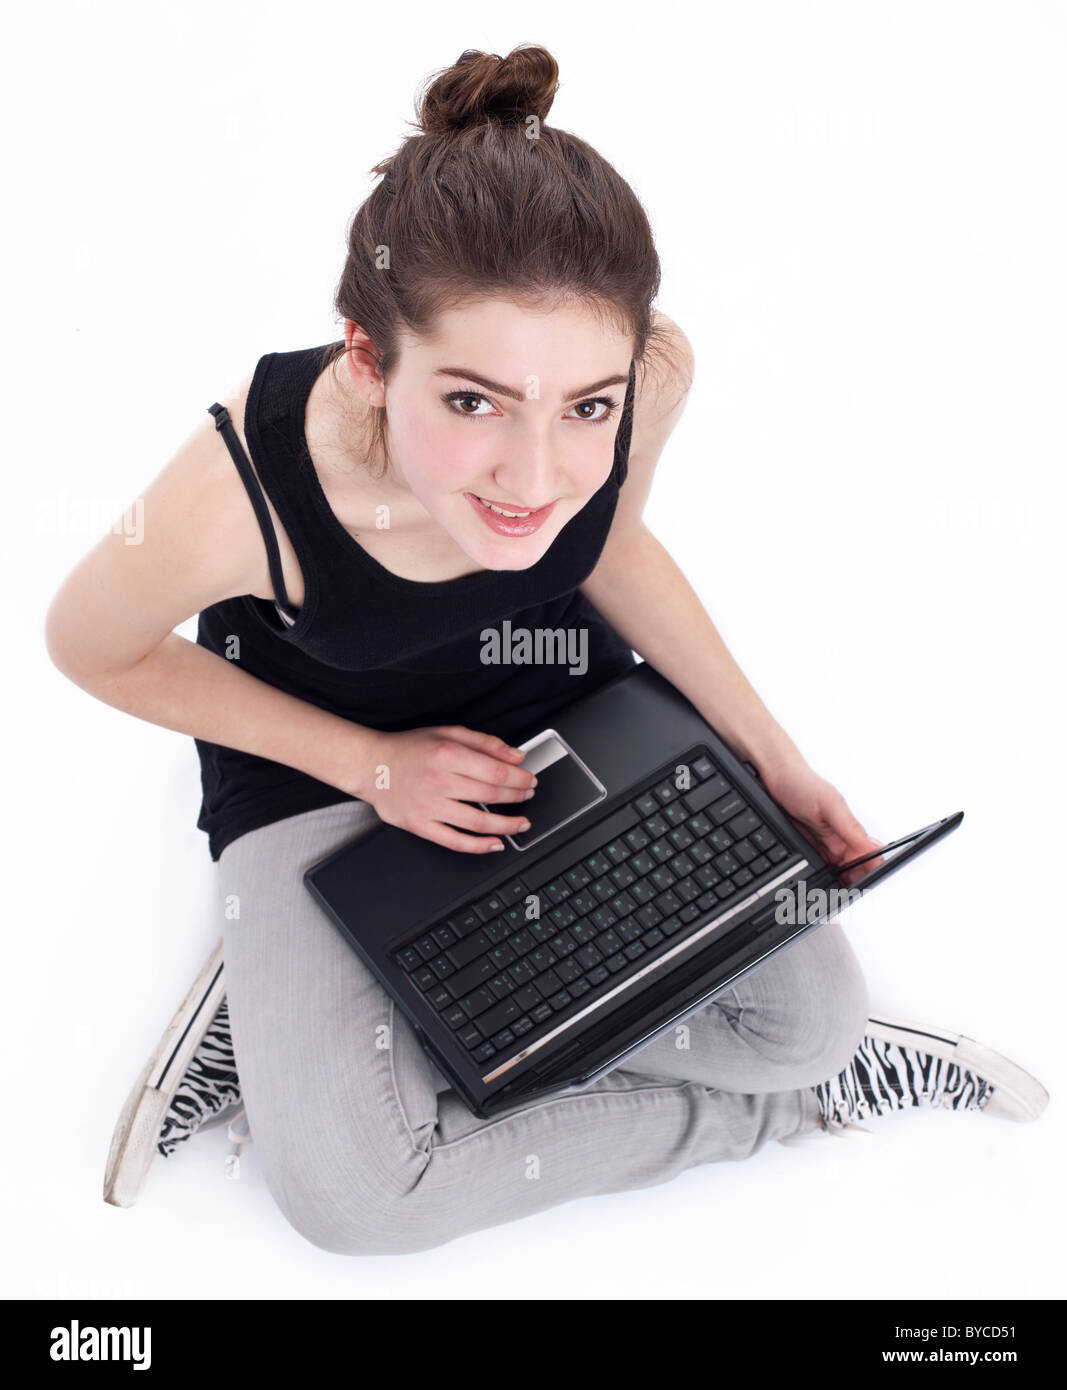 Ragazza che lavora con il computer portatile. Immagine su sfondo bianco. Foto Stock